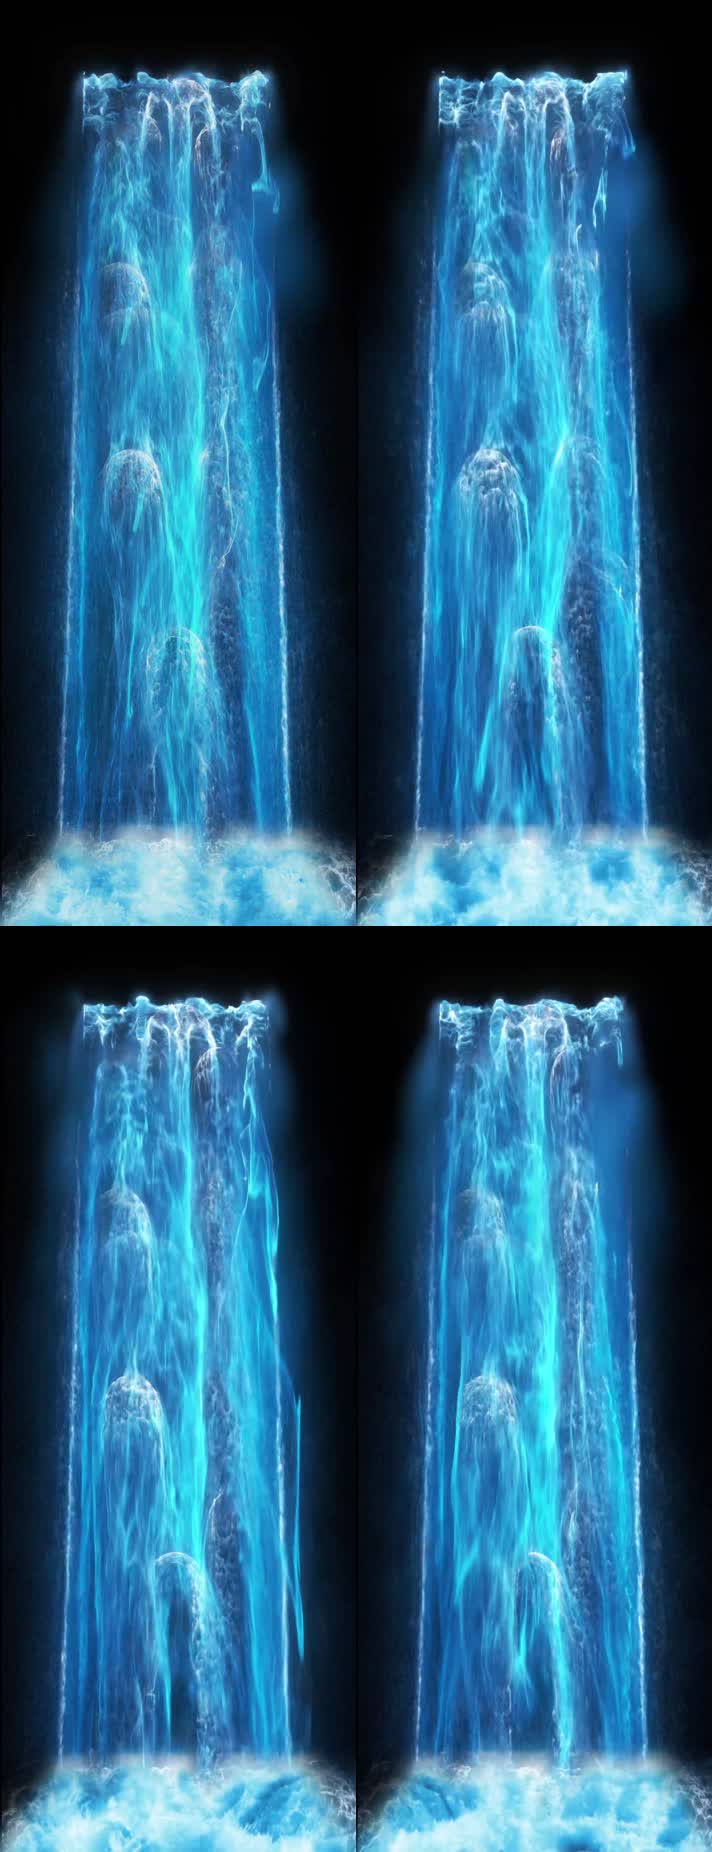 蓝色瀑布流水 竖排素材 梦幻唯美  墙面投影